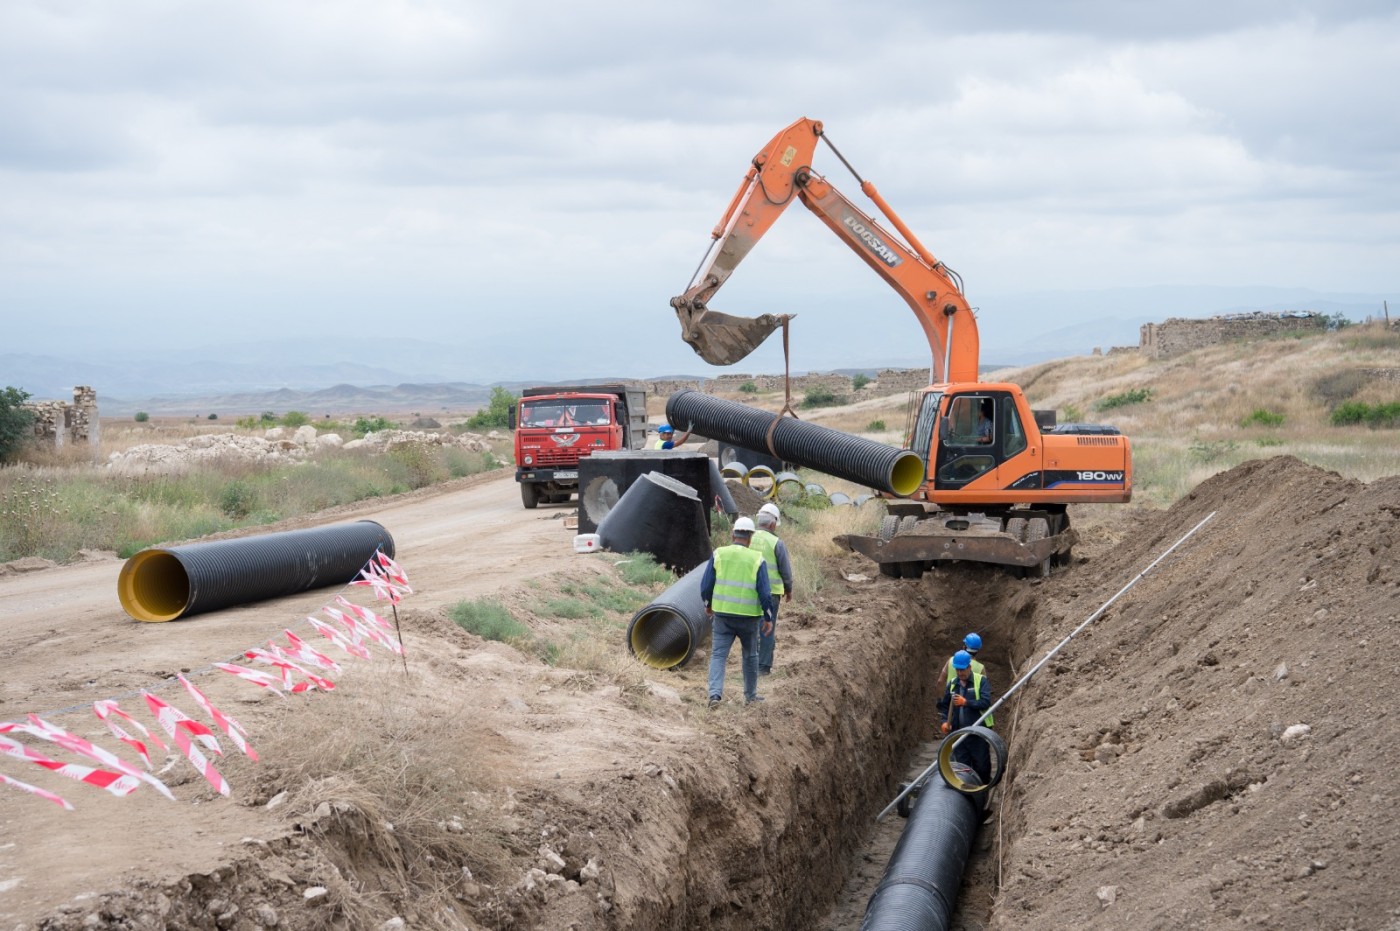 Cəbrayılda içməli su infrastrukturlarının yaradılmasına başlanılıb - VİDEO